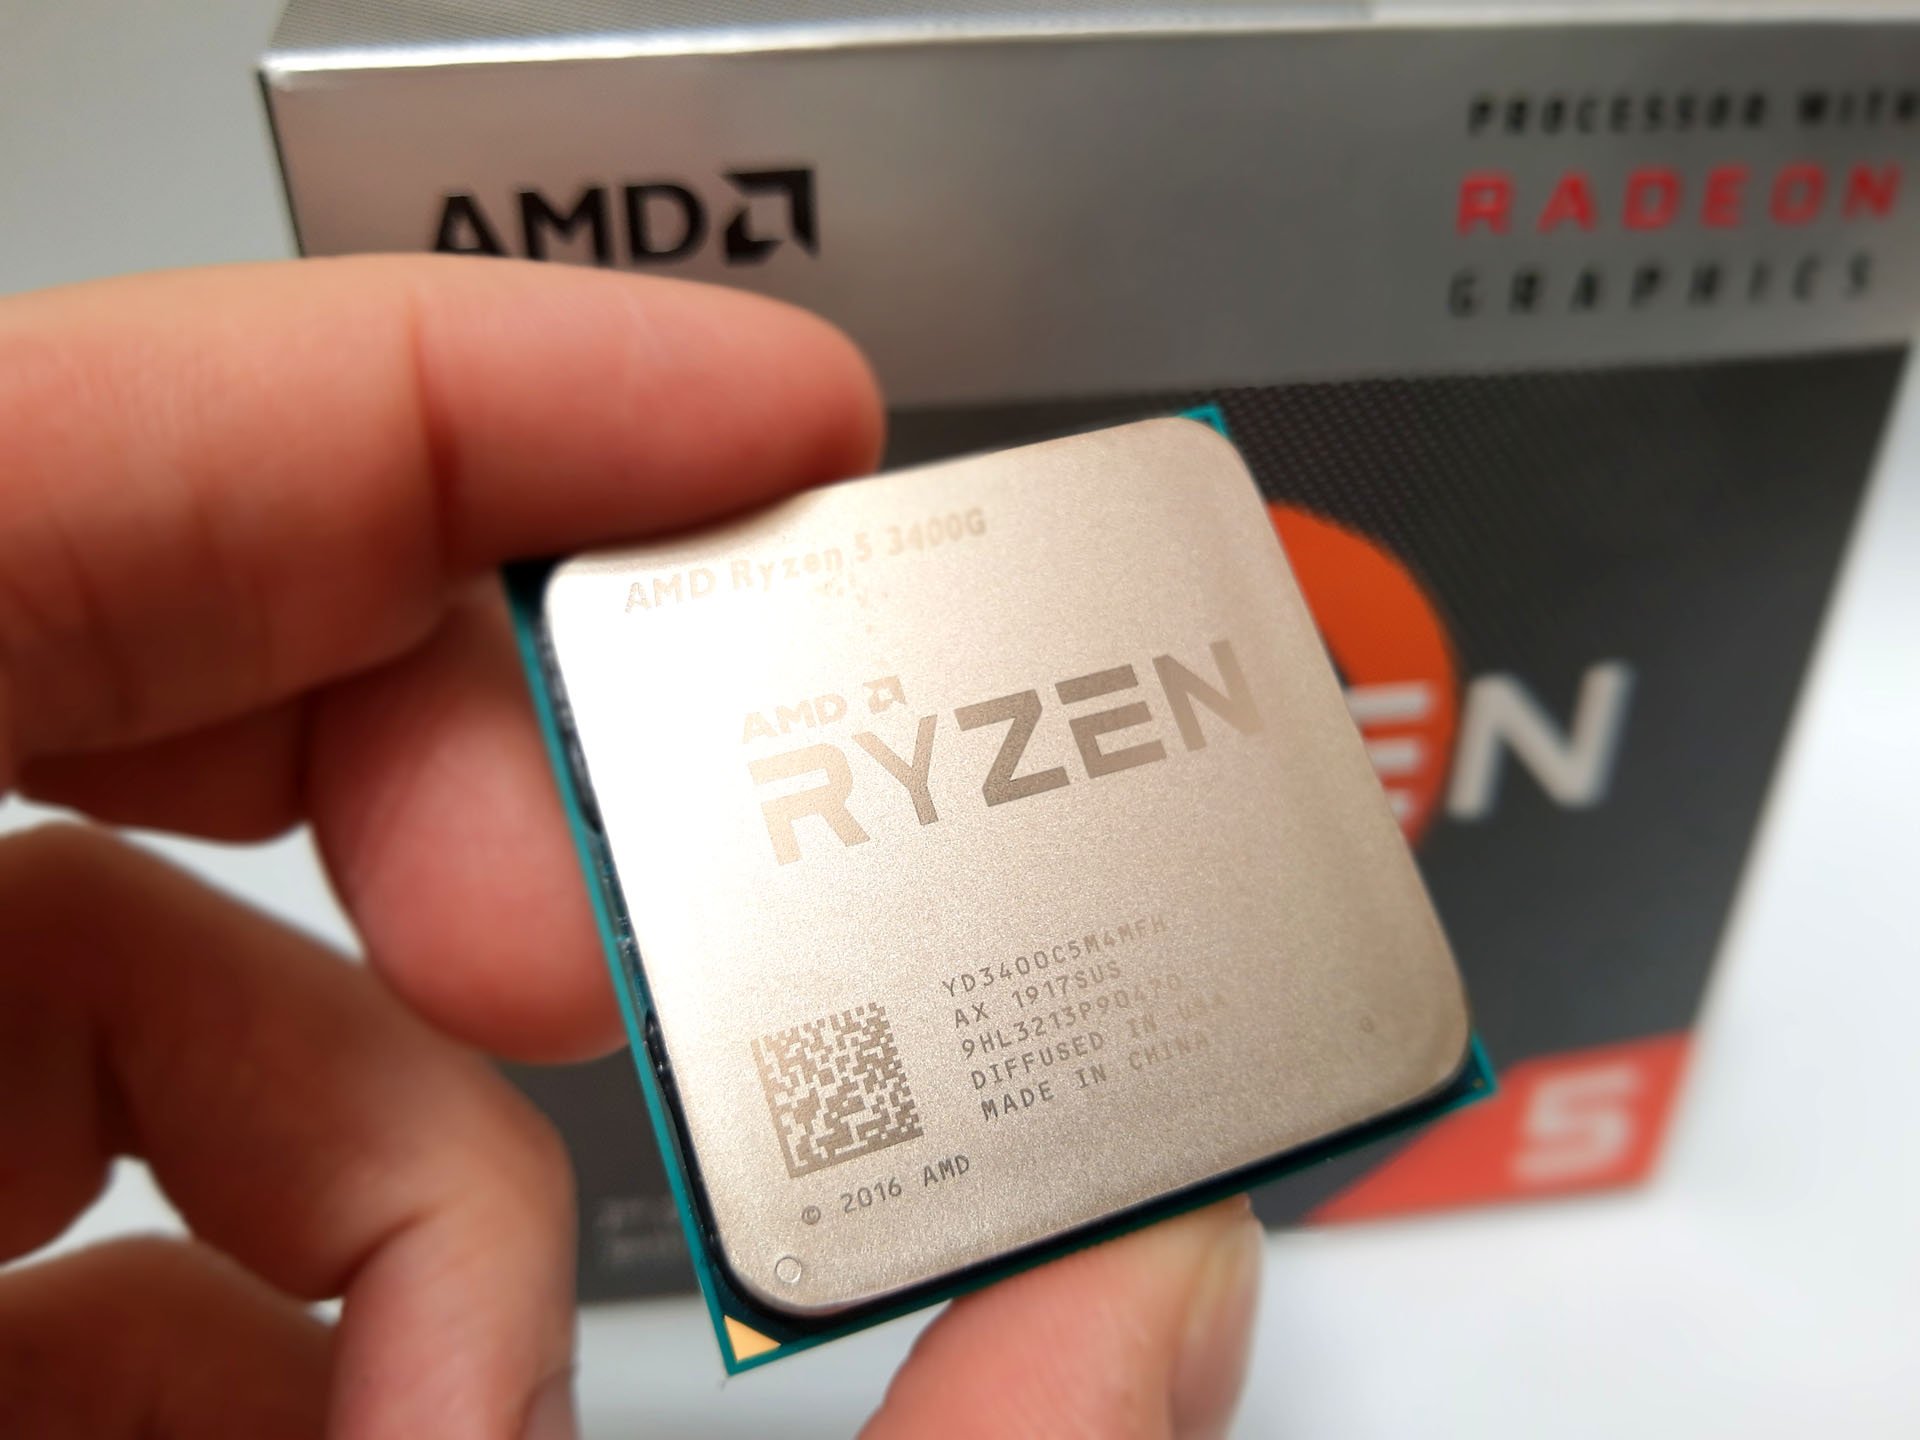 5 3400g купить. Ryzen 5 3400g. Процессор AMD Ryzen 5 3400g. AMD Ryzen 5 3400g am4, 4 x 3700 МГЦ. AMD Ryzen 5 2400g + Vega 11 сокет процессора.